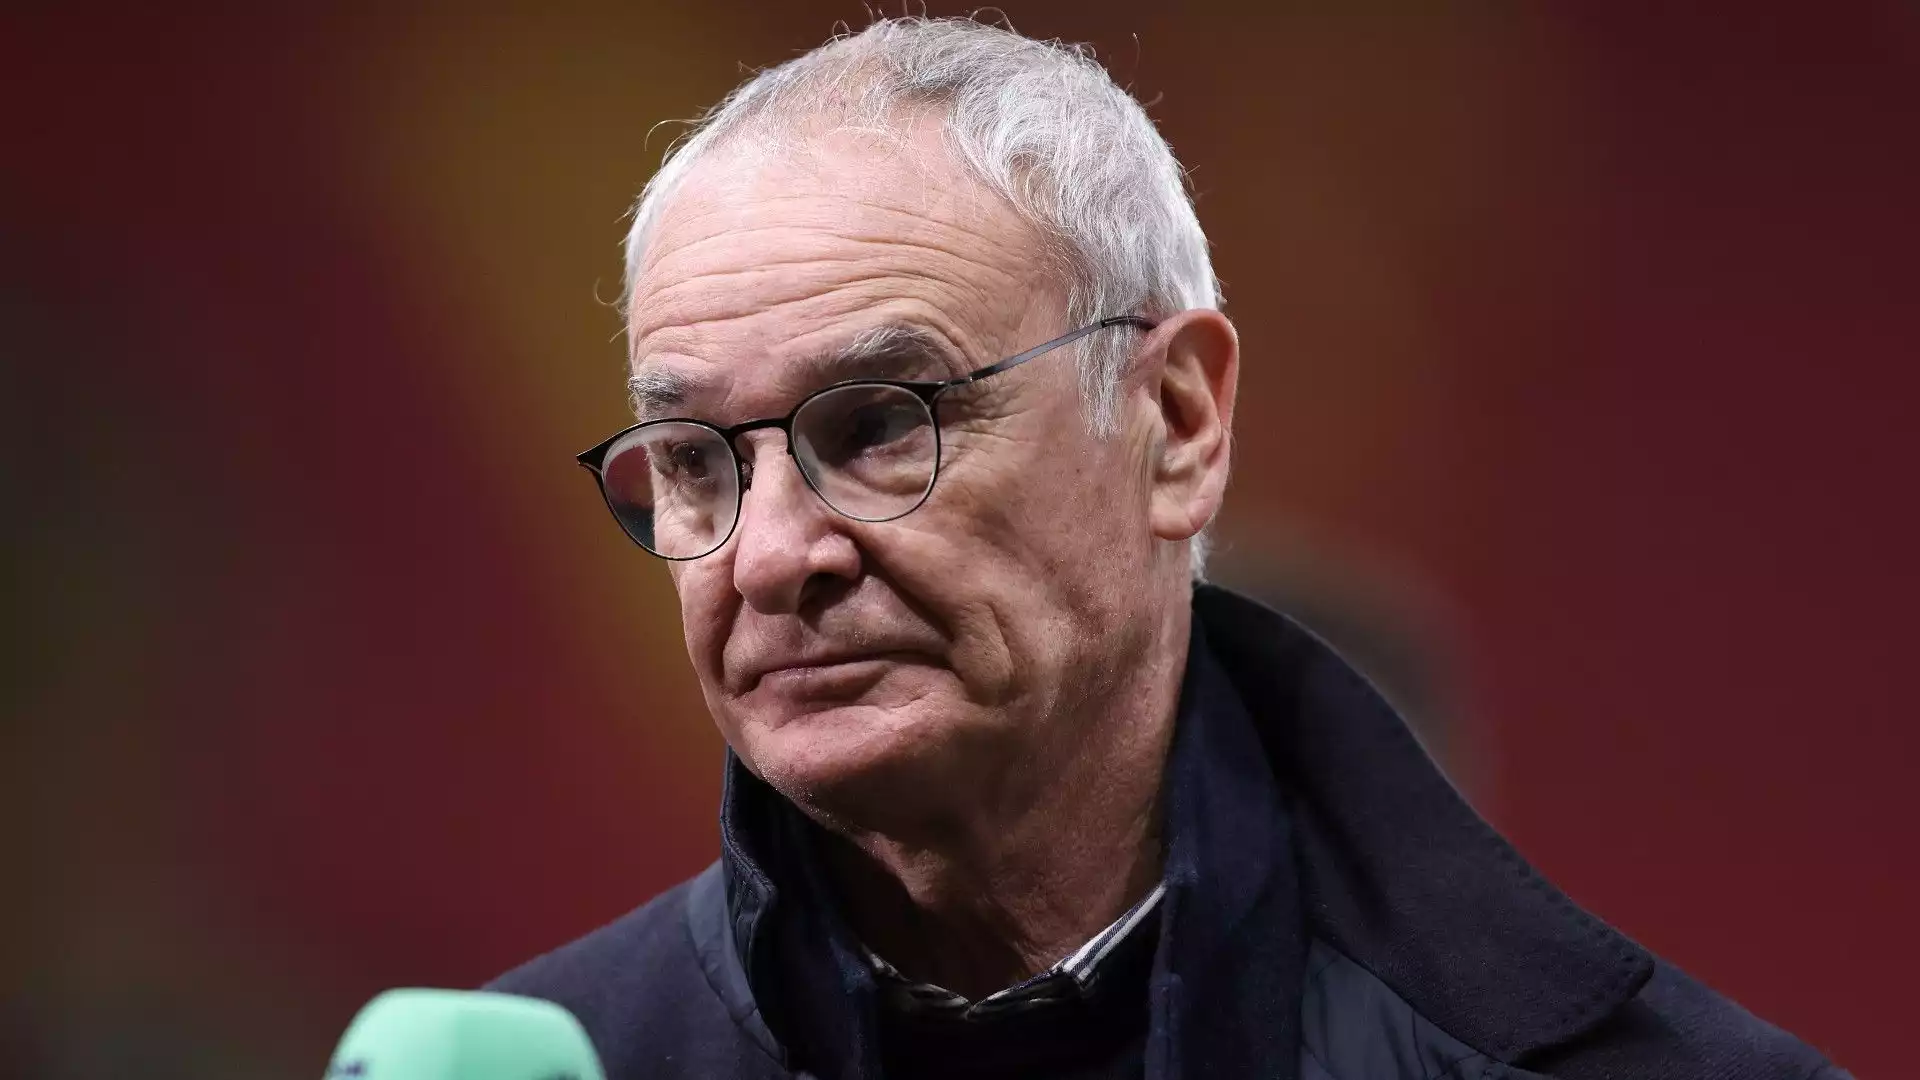 L'eroe di Leicester Claudio Ranieri al momento è svincolato dopo che ha chiuso con il Watford a gennaio